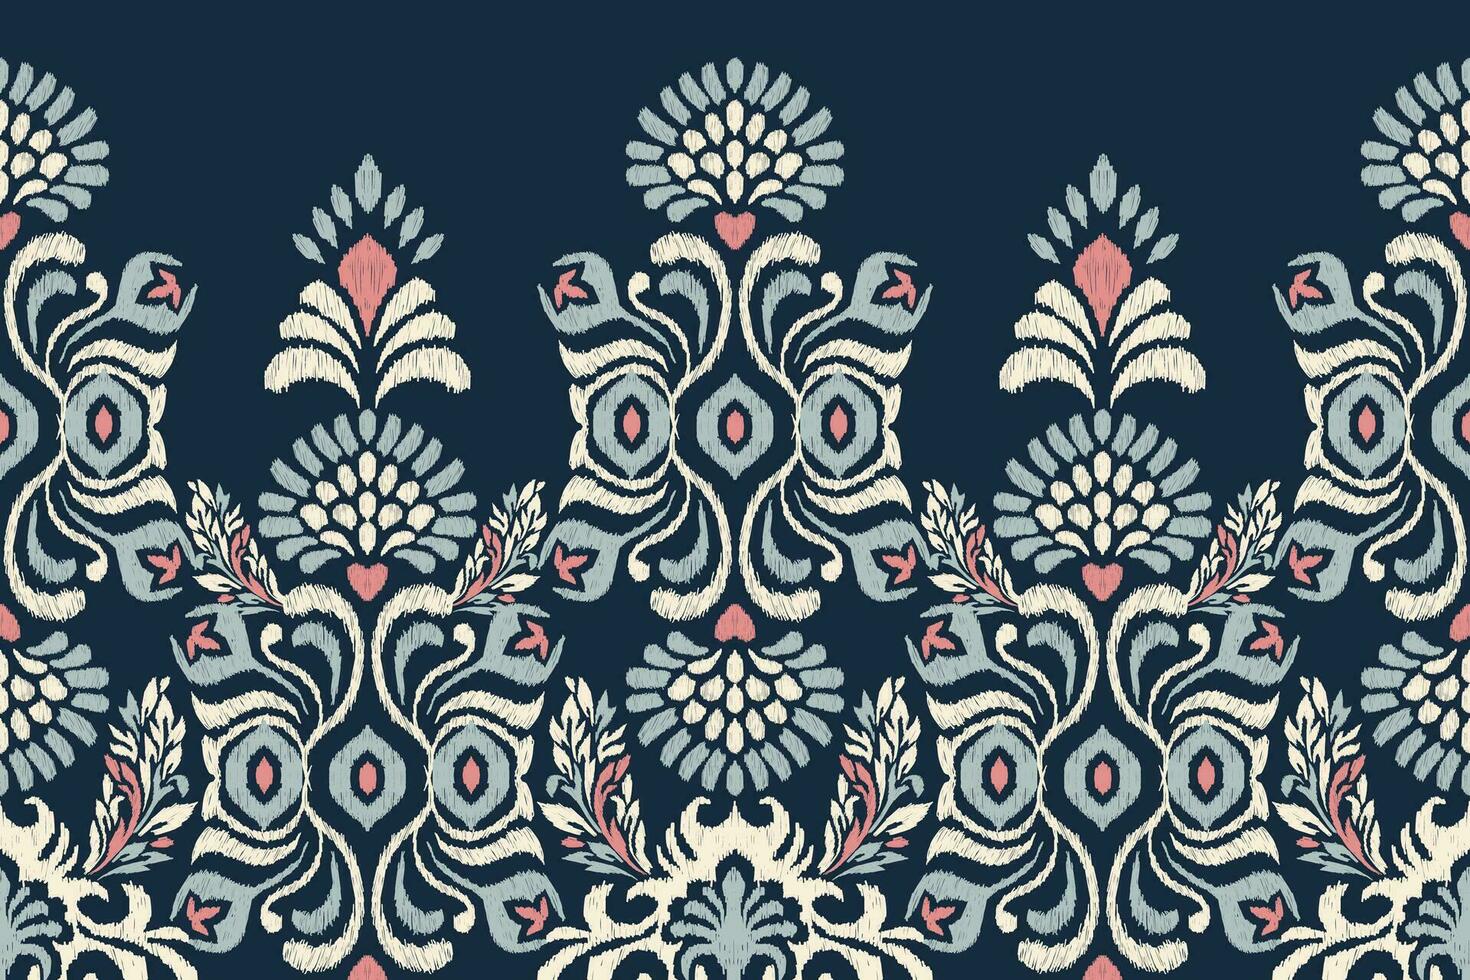 ikat floral cachemir bordado en Armada azul fondo.ikat étnico oriental modelo tradicional.azteca estilo resumen vector ilustración.diseño para textura,tela,ropa,envoltura,decoración,pareo.